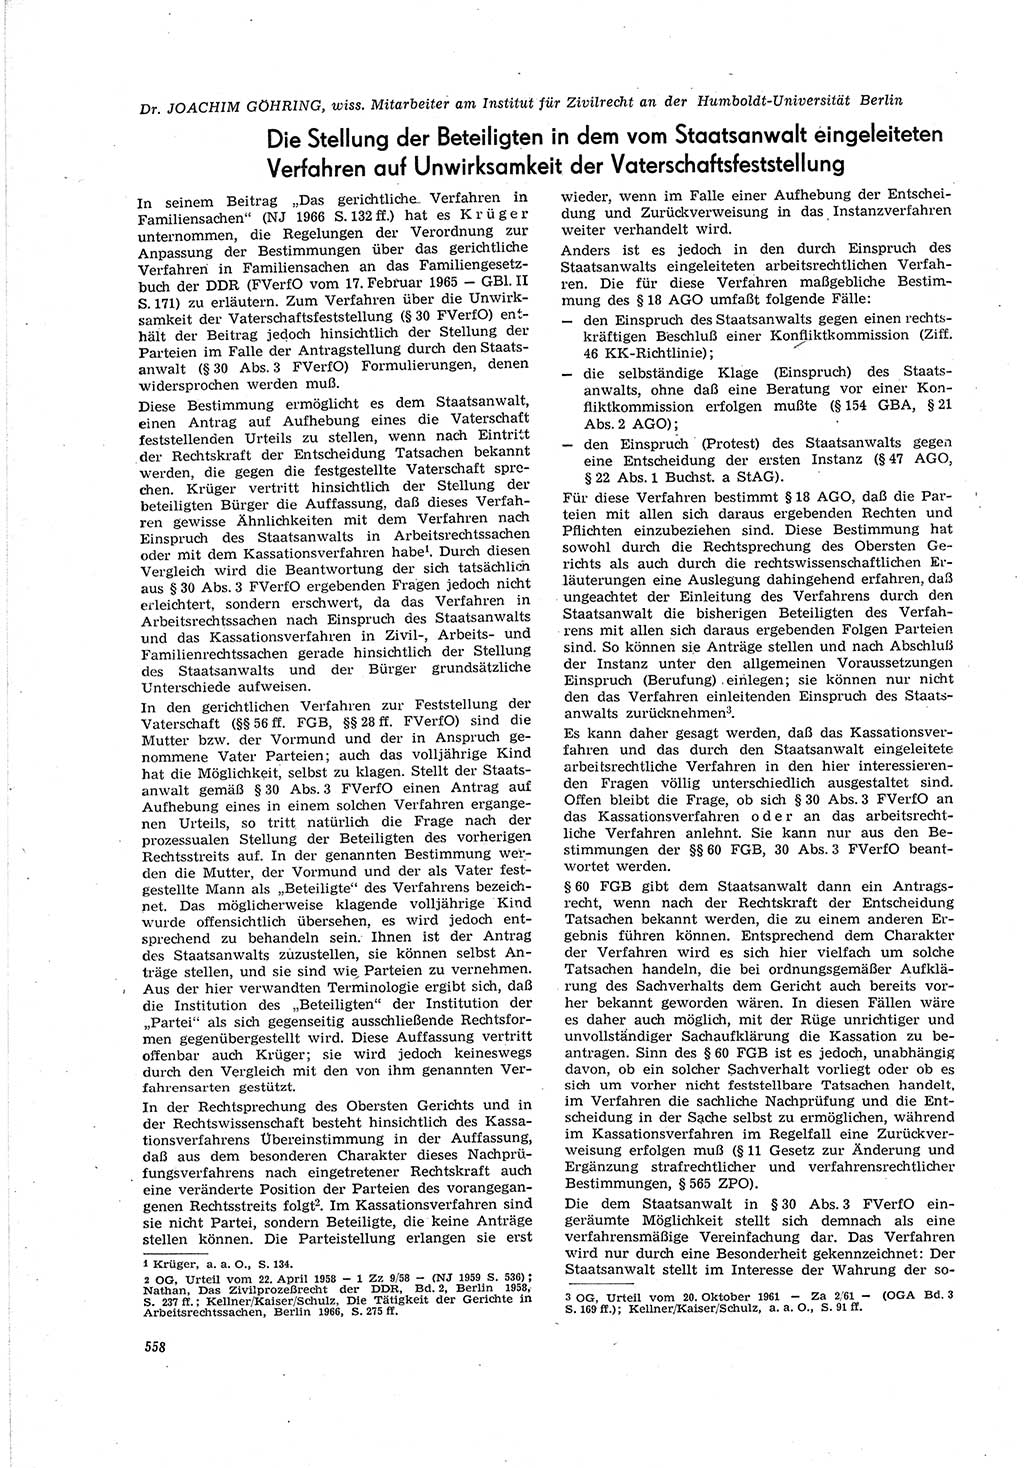 Neue Justiz (NJ), Zeitschrift für Recht und Rechtswissenschaft [Deutsche Demokratische Republik (DDR)], 20. Jahrgang 1966, Seite 558 (NJ DDR 1966, S. 558)